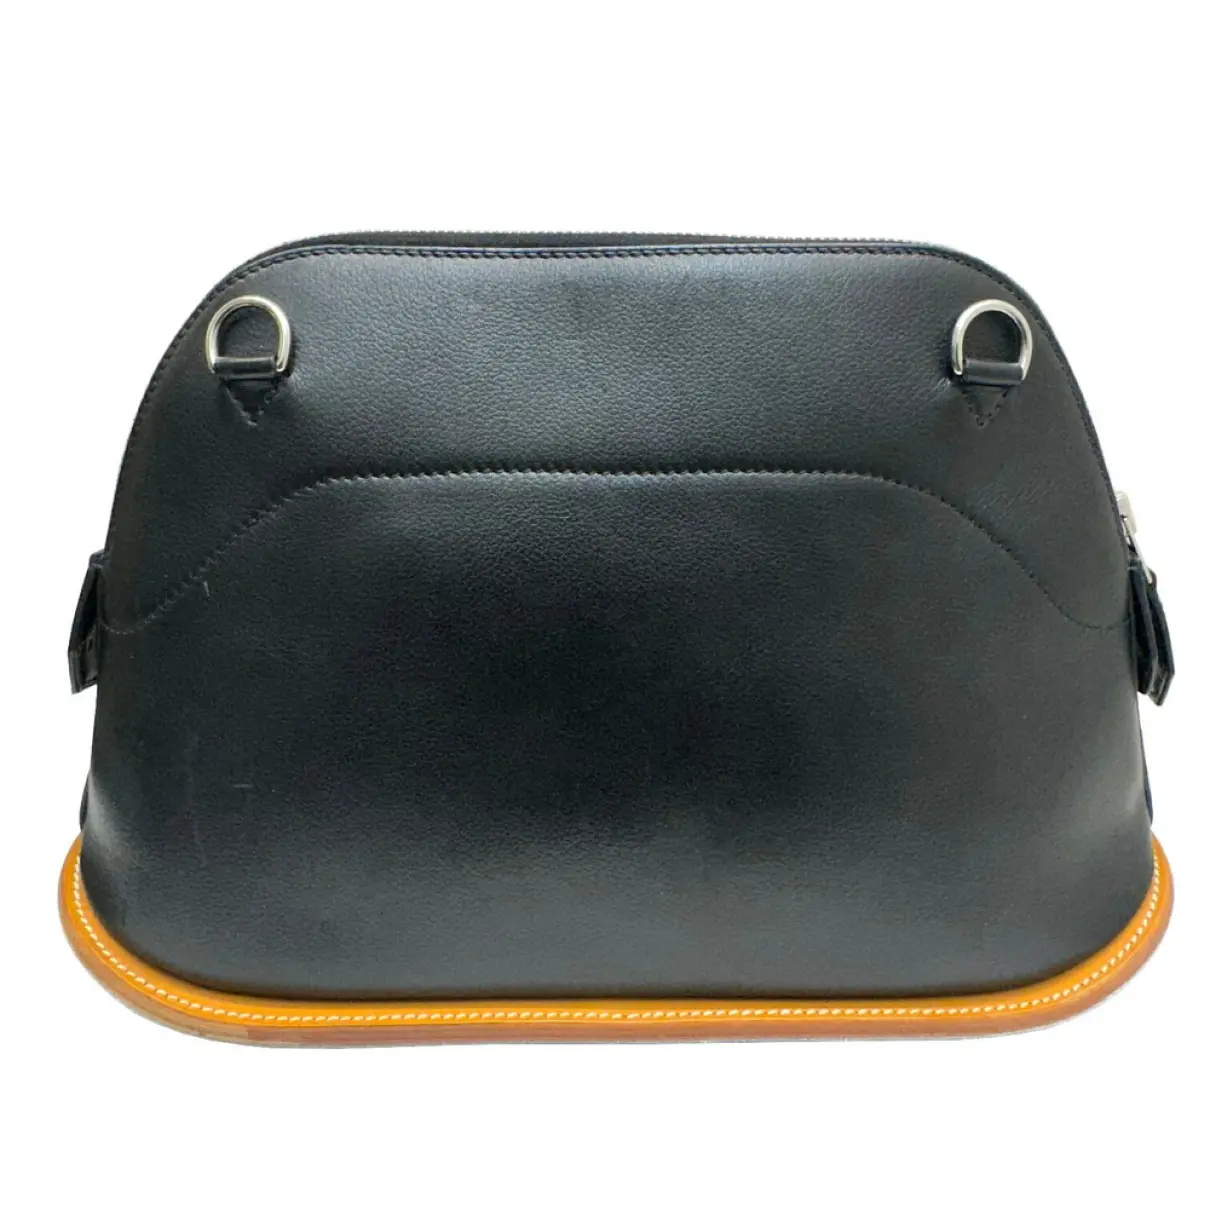 Buy Hermès Bolide leather handbag online